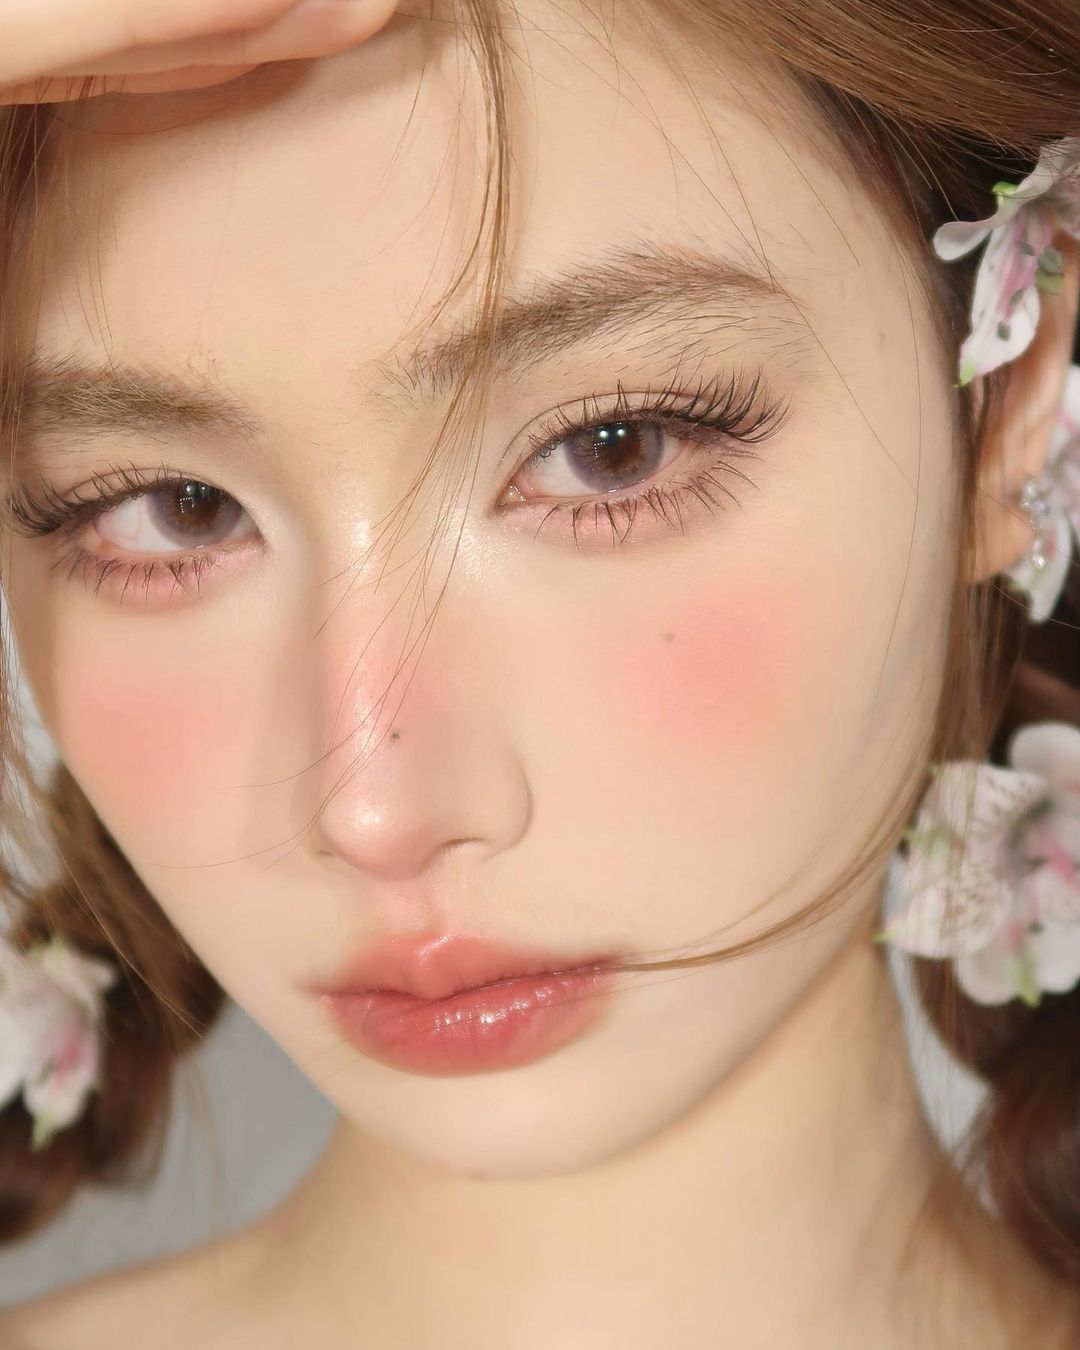 jellybean_xxdd C-beauty makeup